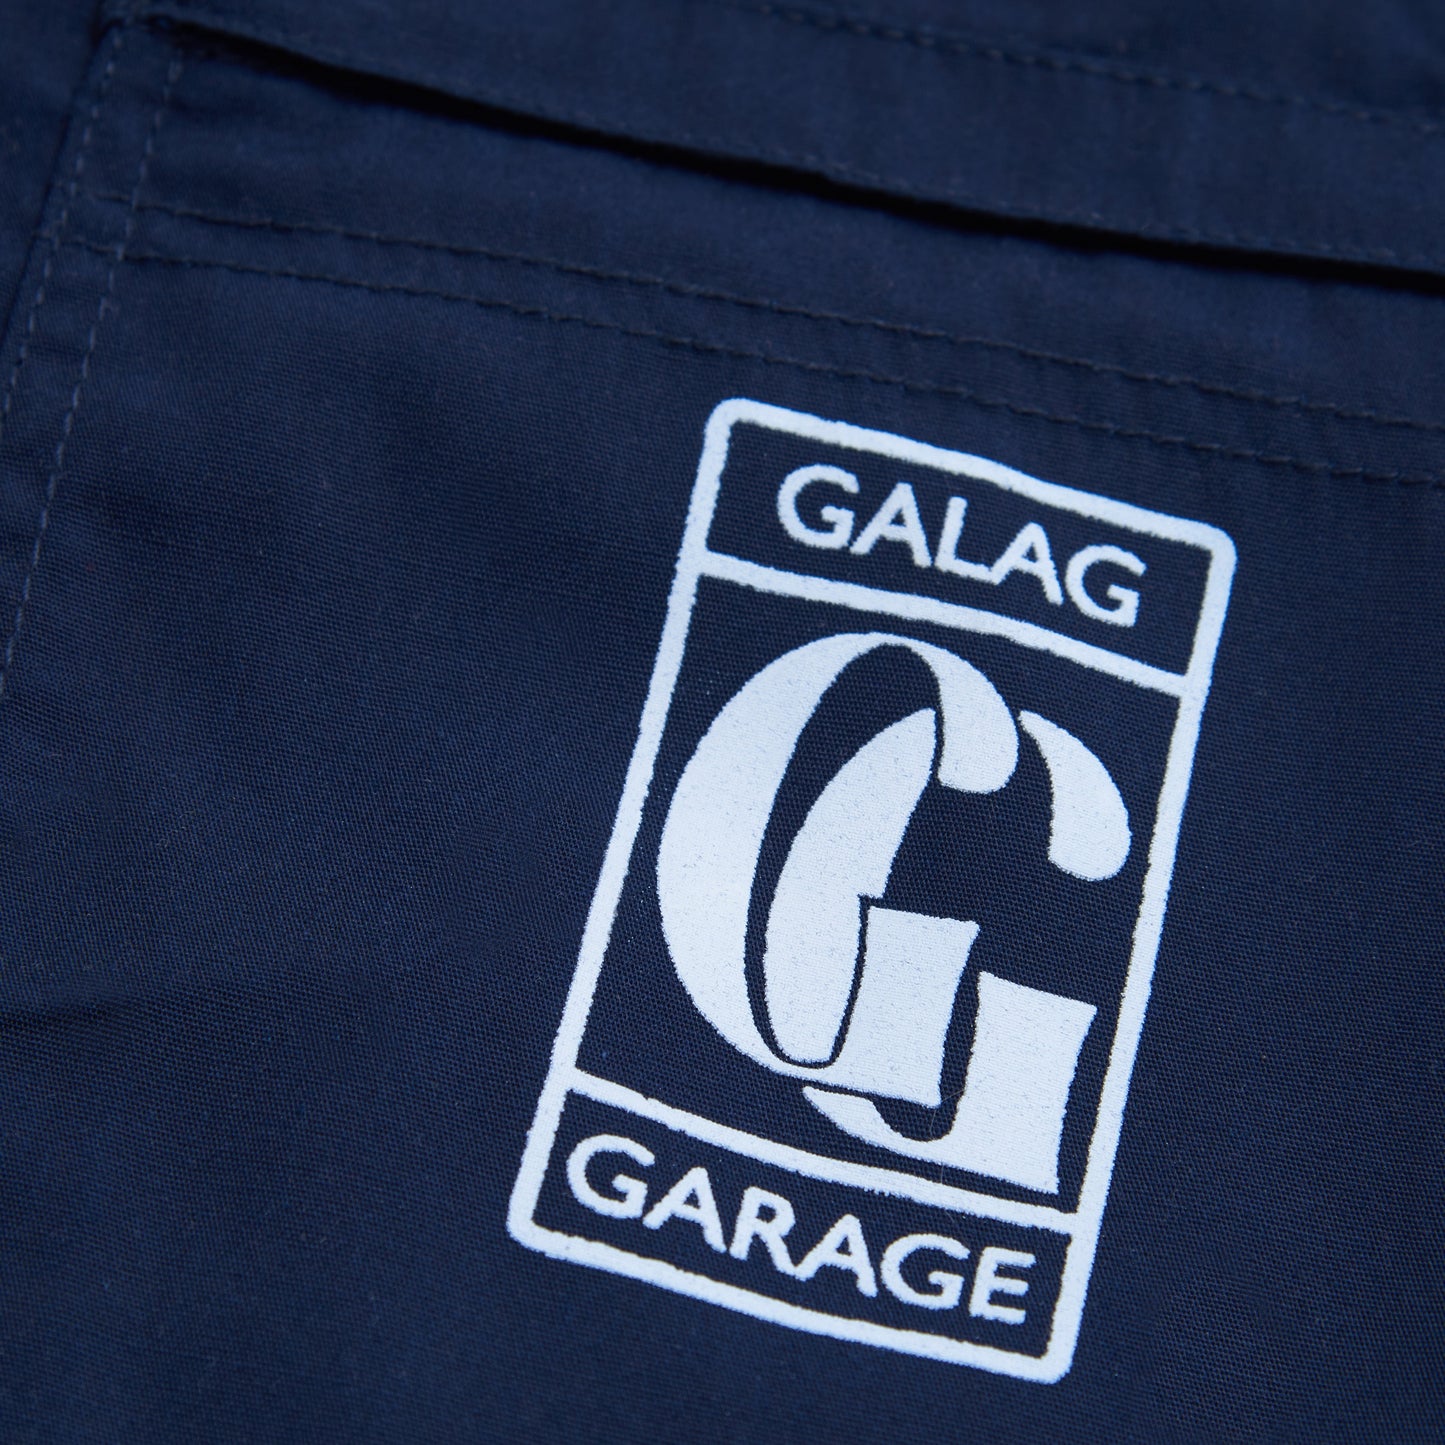 GALAG GARAGE SHORTS - NAVY